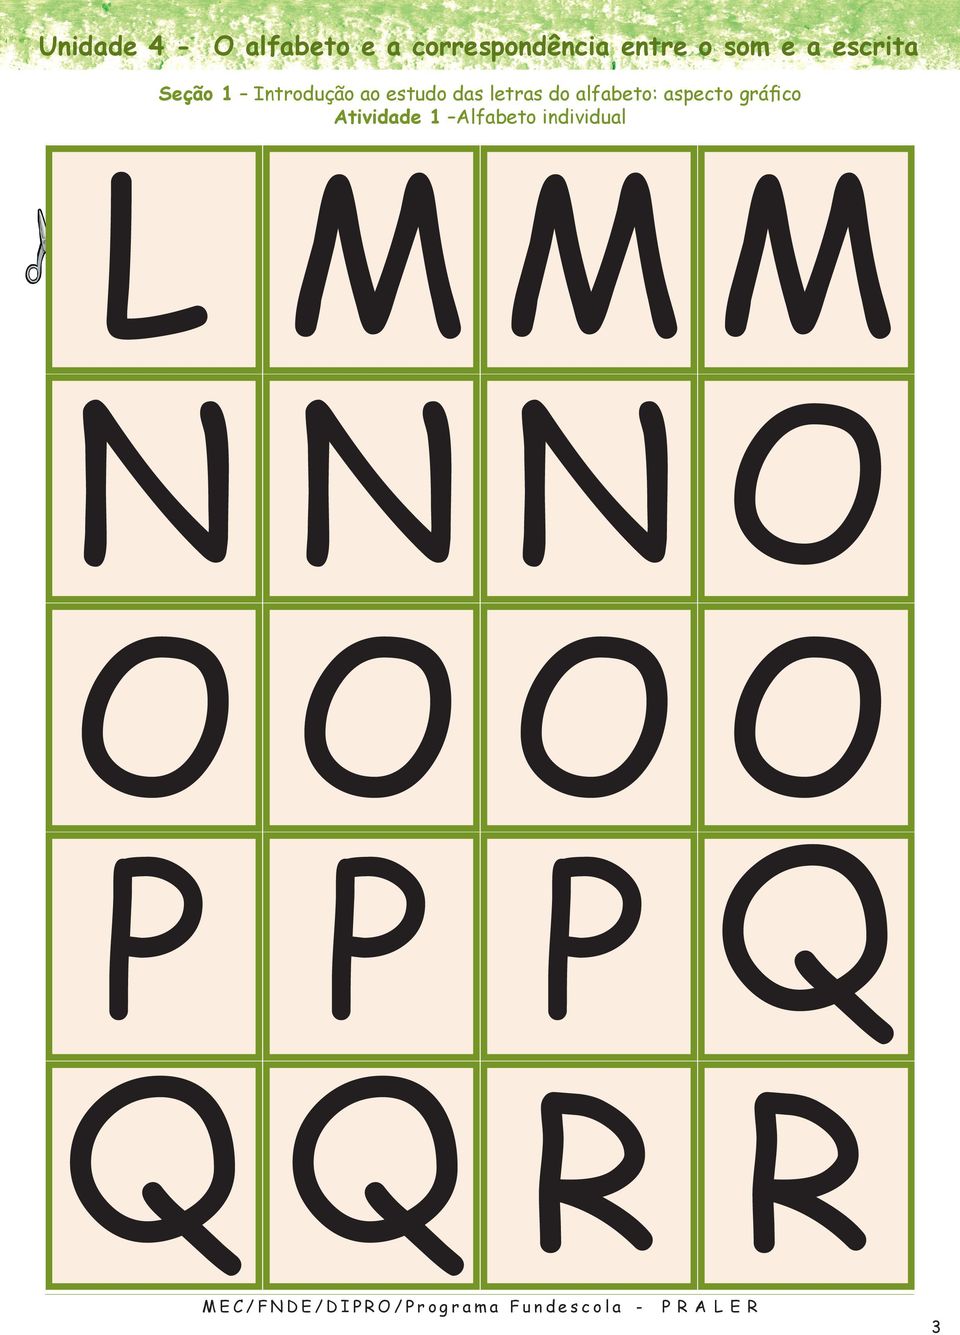 ao estudo das letras do alfabeto: aspecto